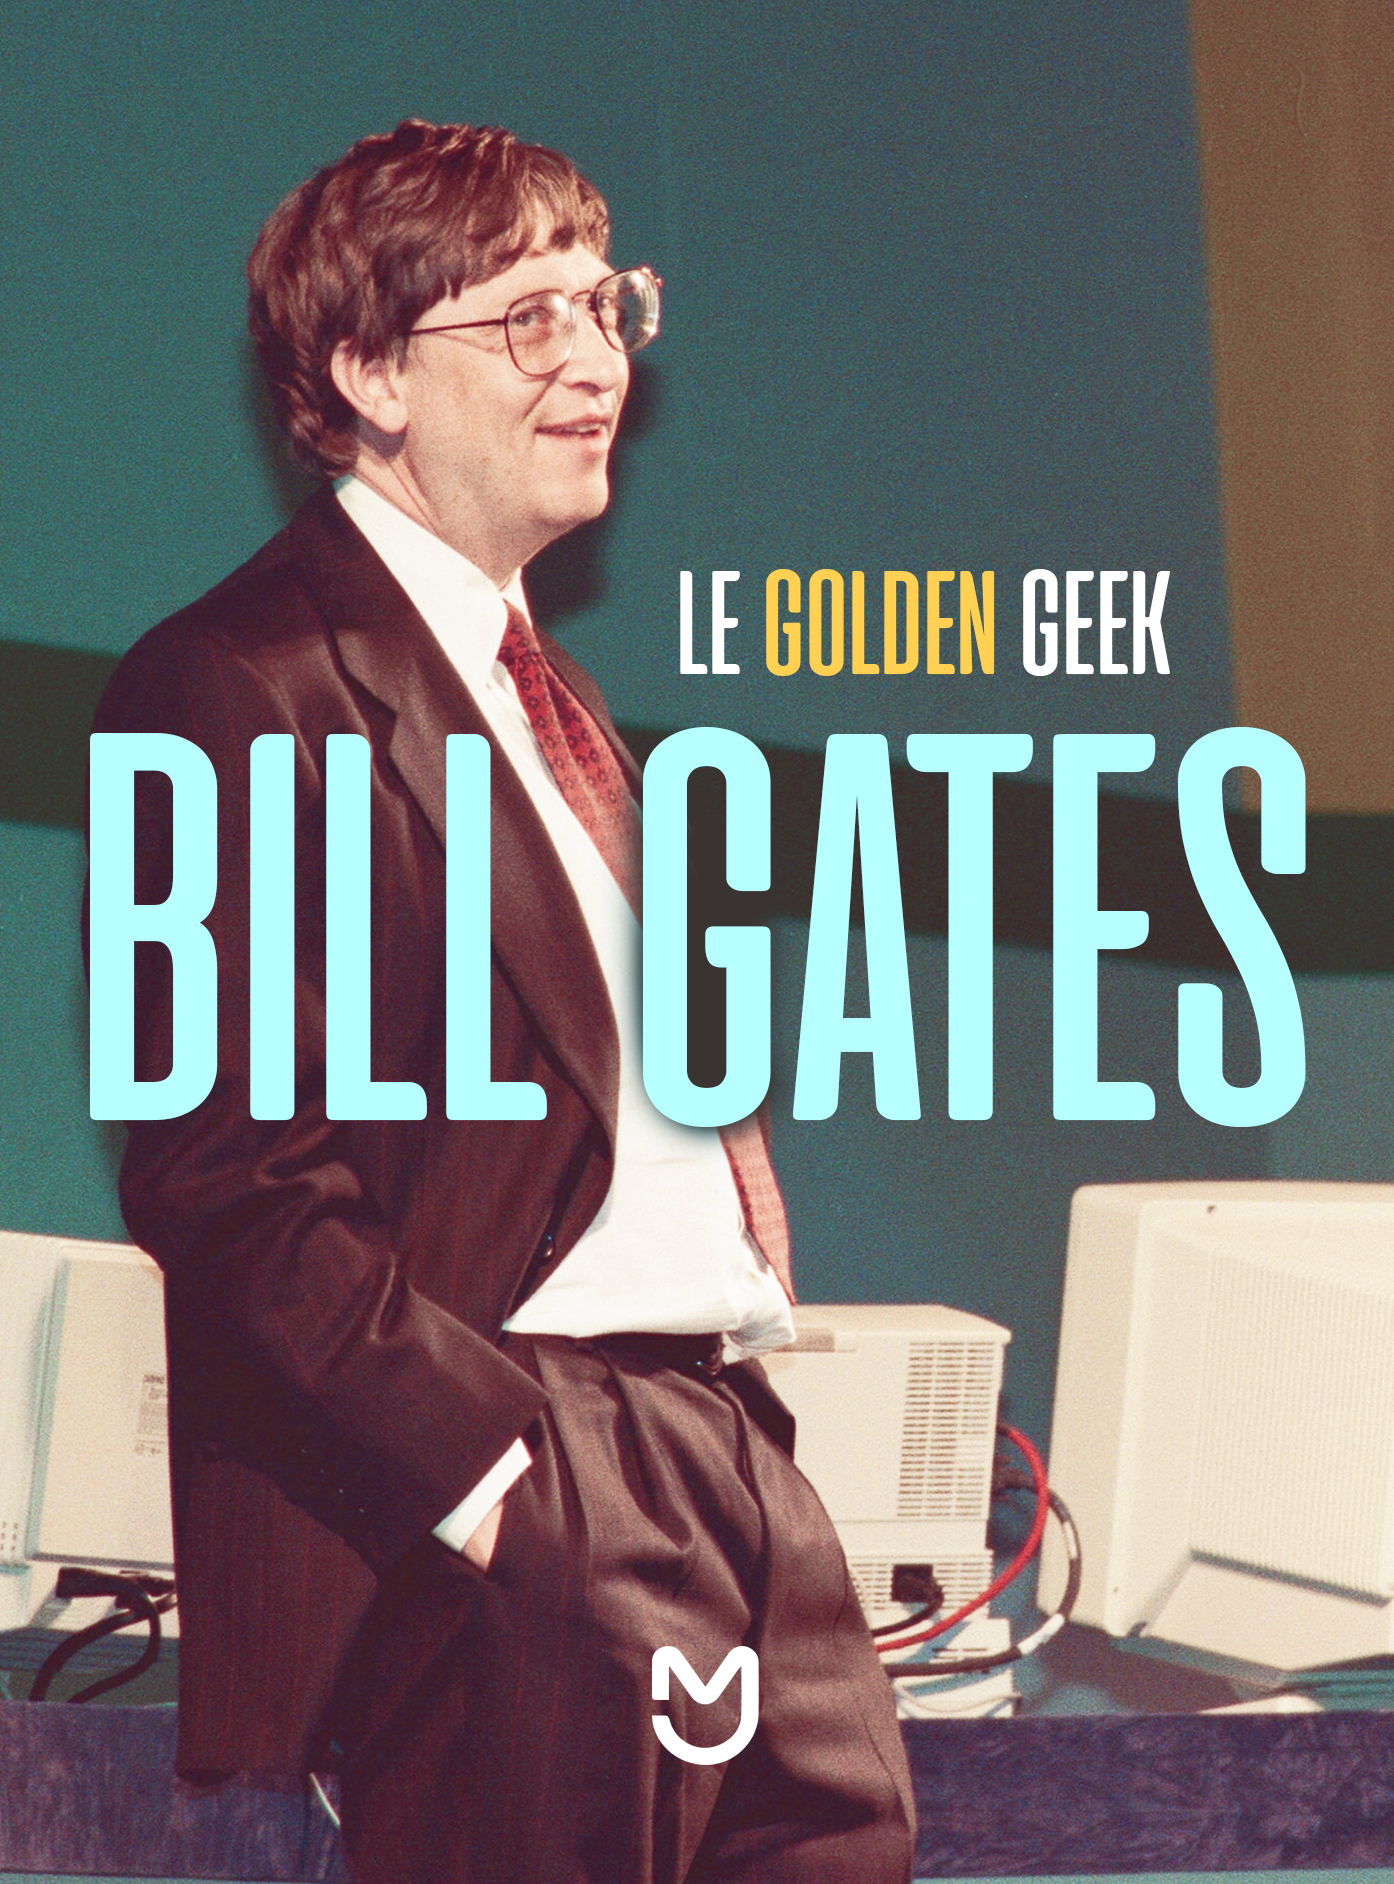 Le golden geek Bill Gates